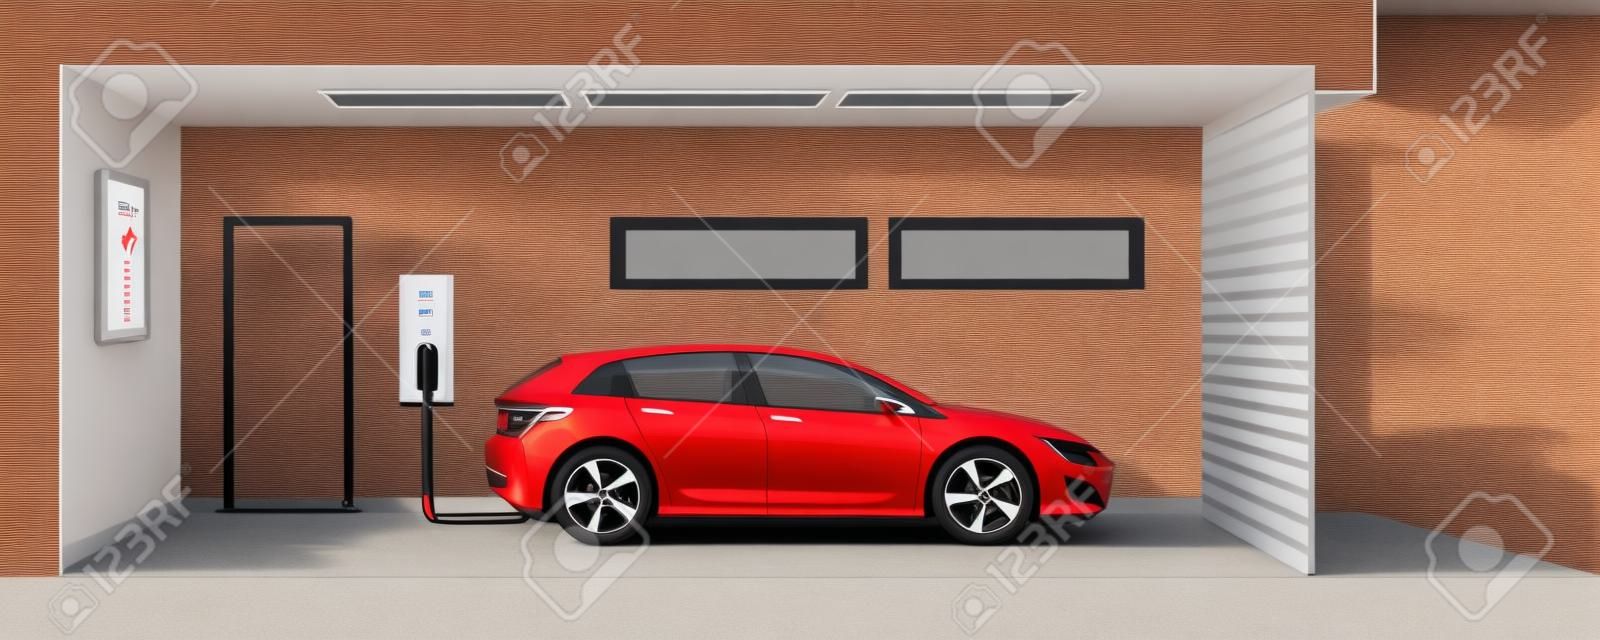 Flache Darstellung eines roten Elektro-Auto Aufladen an der Ladestation Punkt innerhalb Hause Garage. Integrierte intelligente Hauselektromobilität e-motion-Konzept.